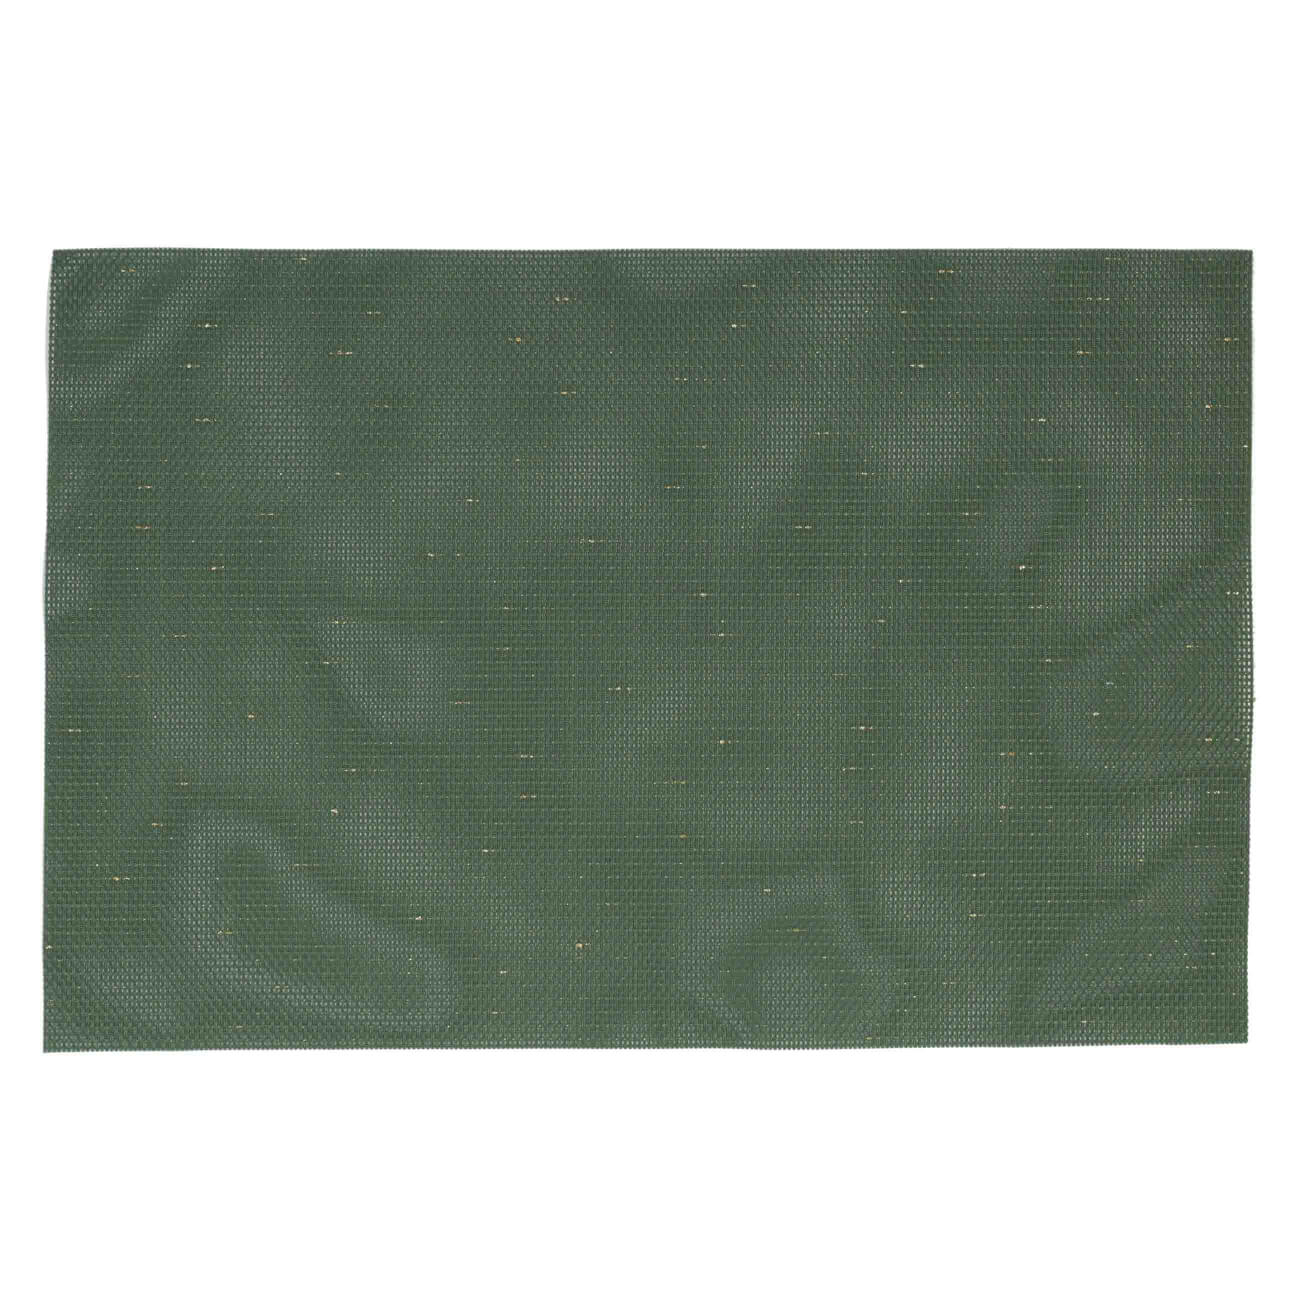 Салфетка под приборы, 30х45 см, ПВХ/полиэстер, прямоугольная, зеленая, Solid салфетка под приборы 30х45 см полиэстер прямоугольная белая зеленое кружево may lily